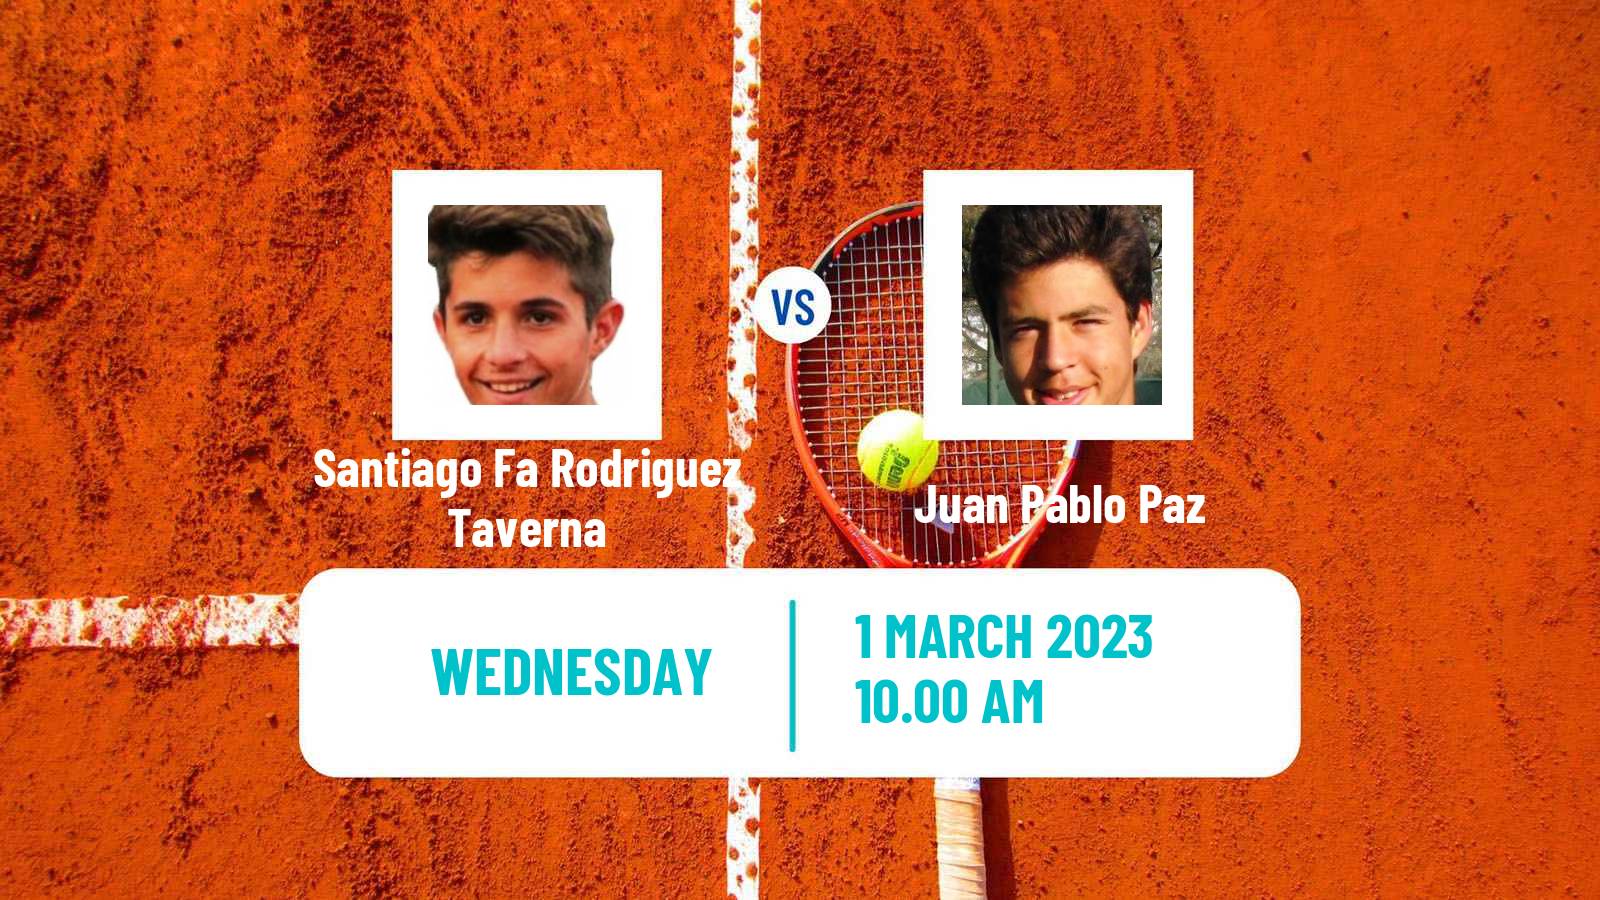 Tennis ITF Tournaments Santiago Fa Rodriguez Taverna - Juan Pablo Paz